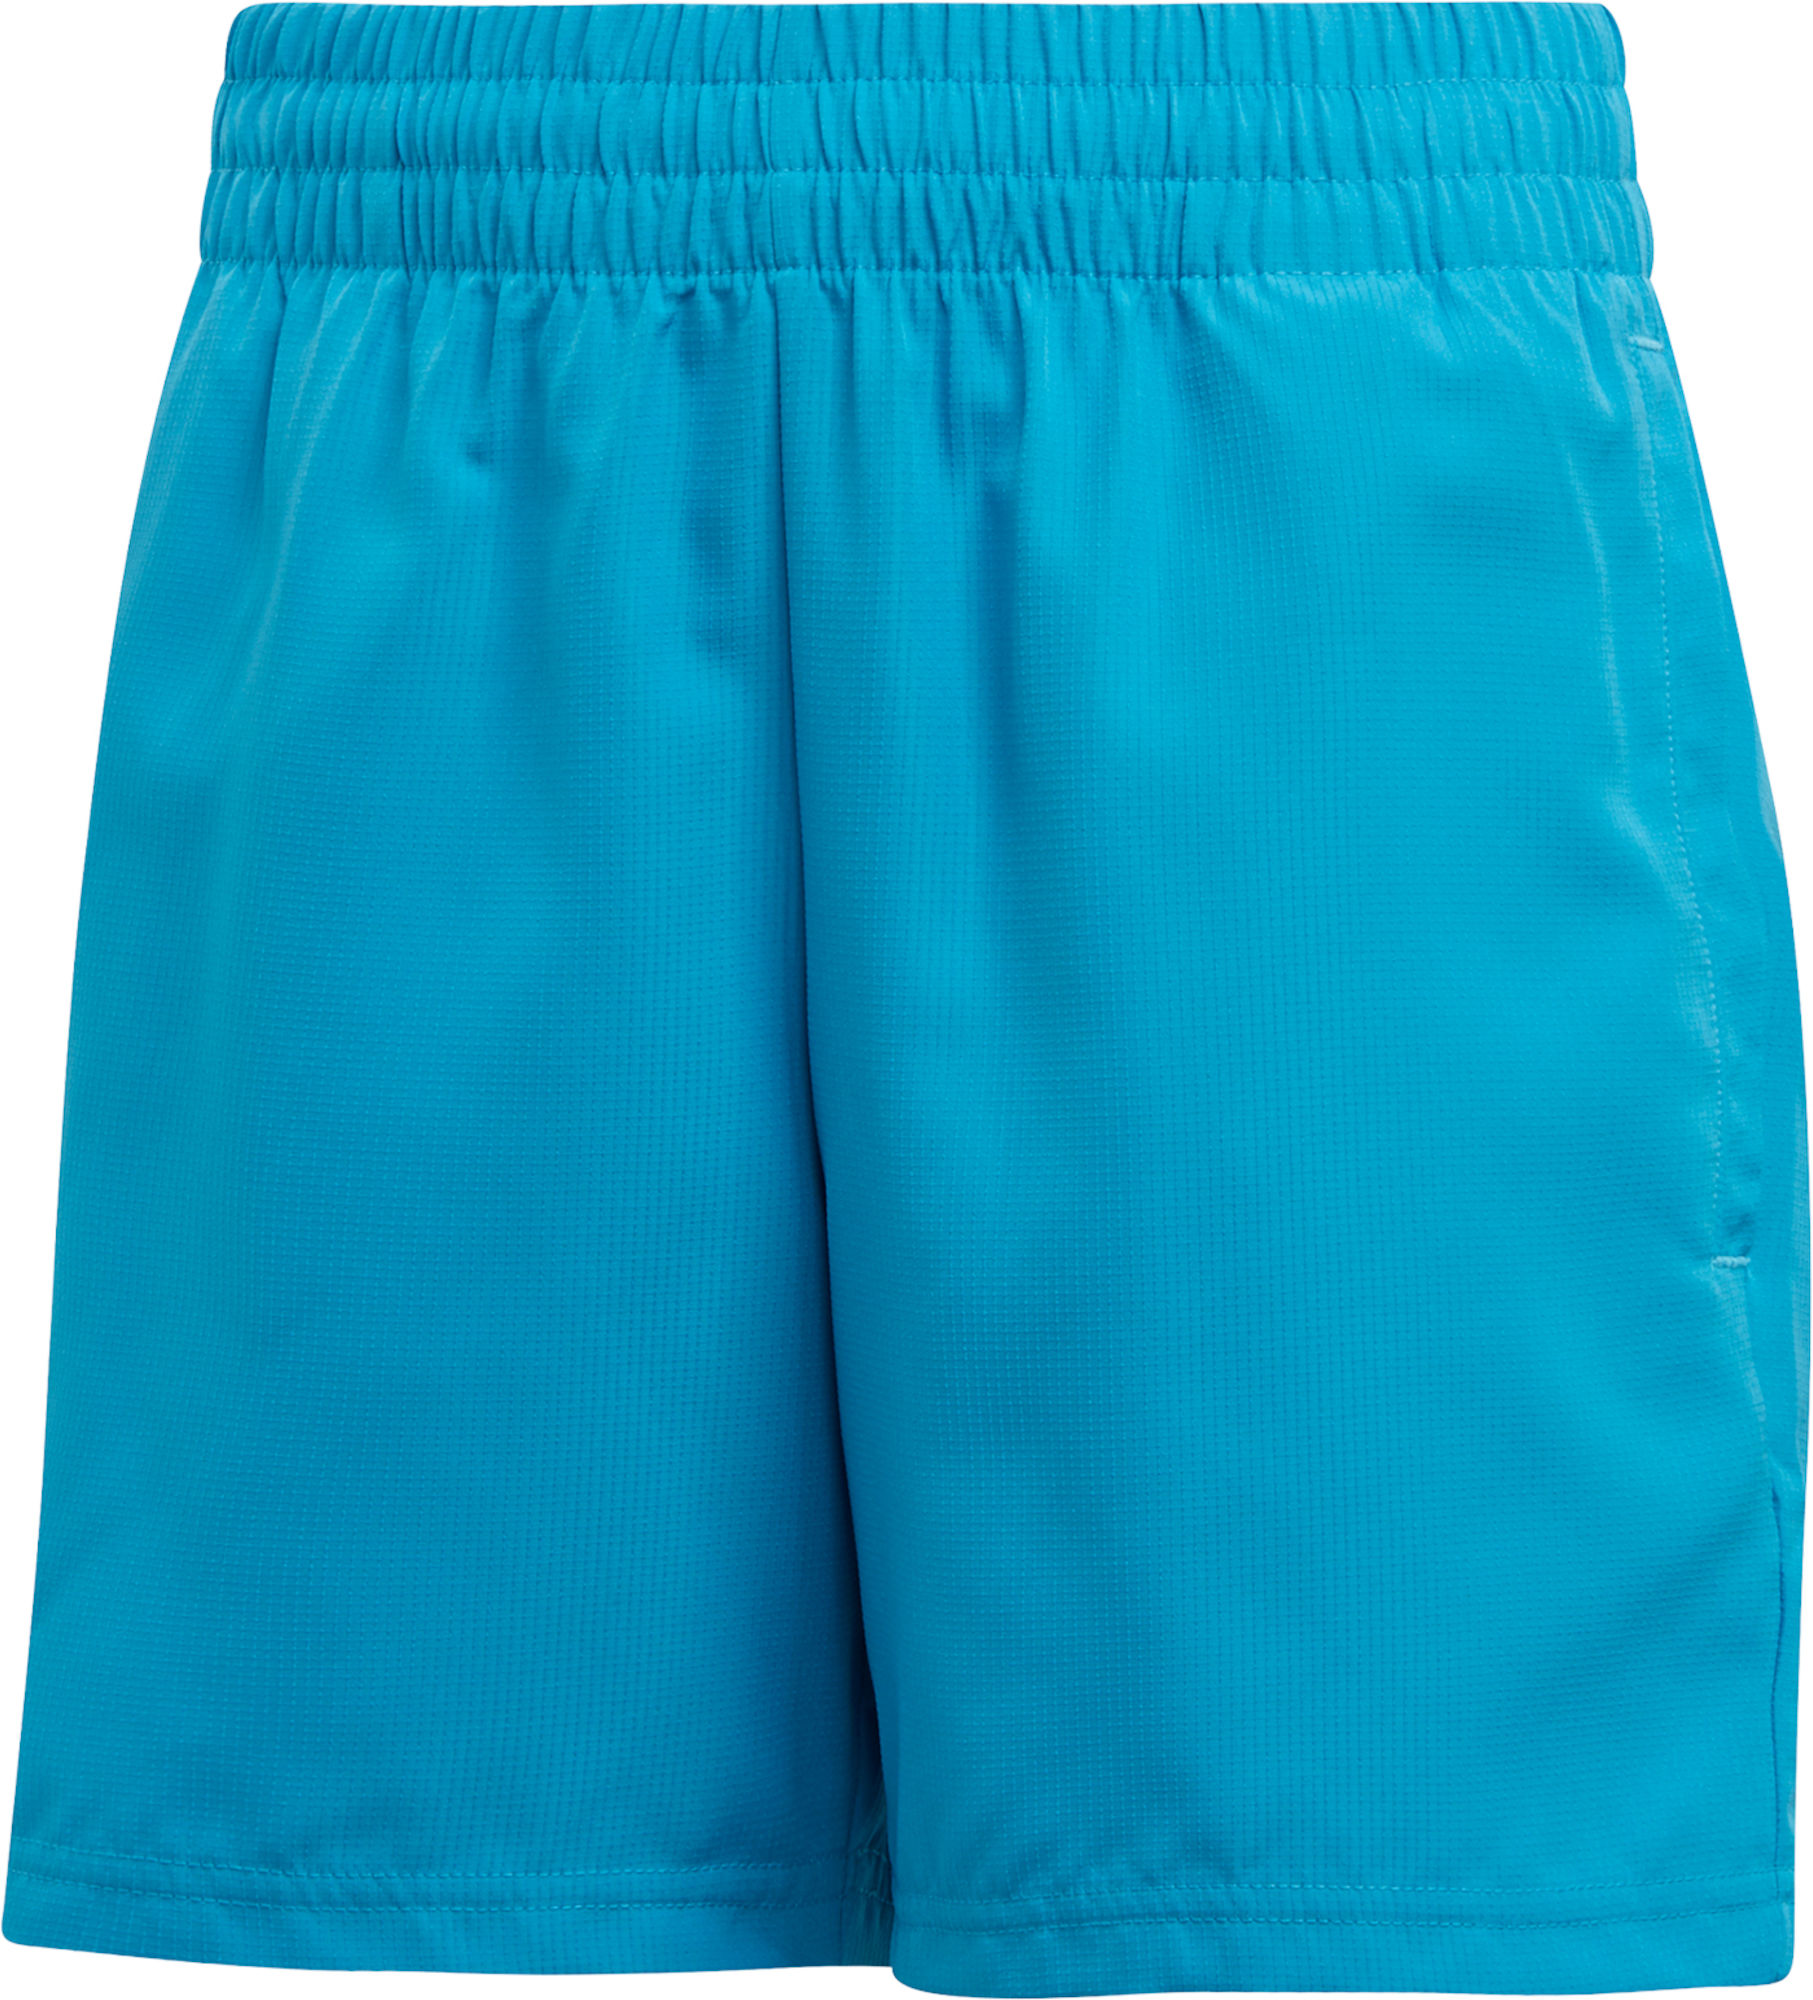 Adidas Boys Club Shorts Blue 116